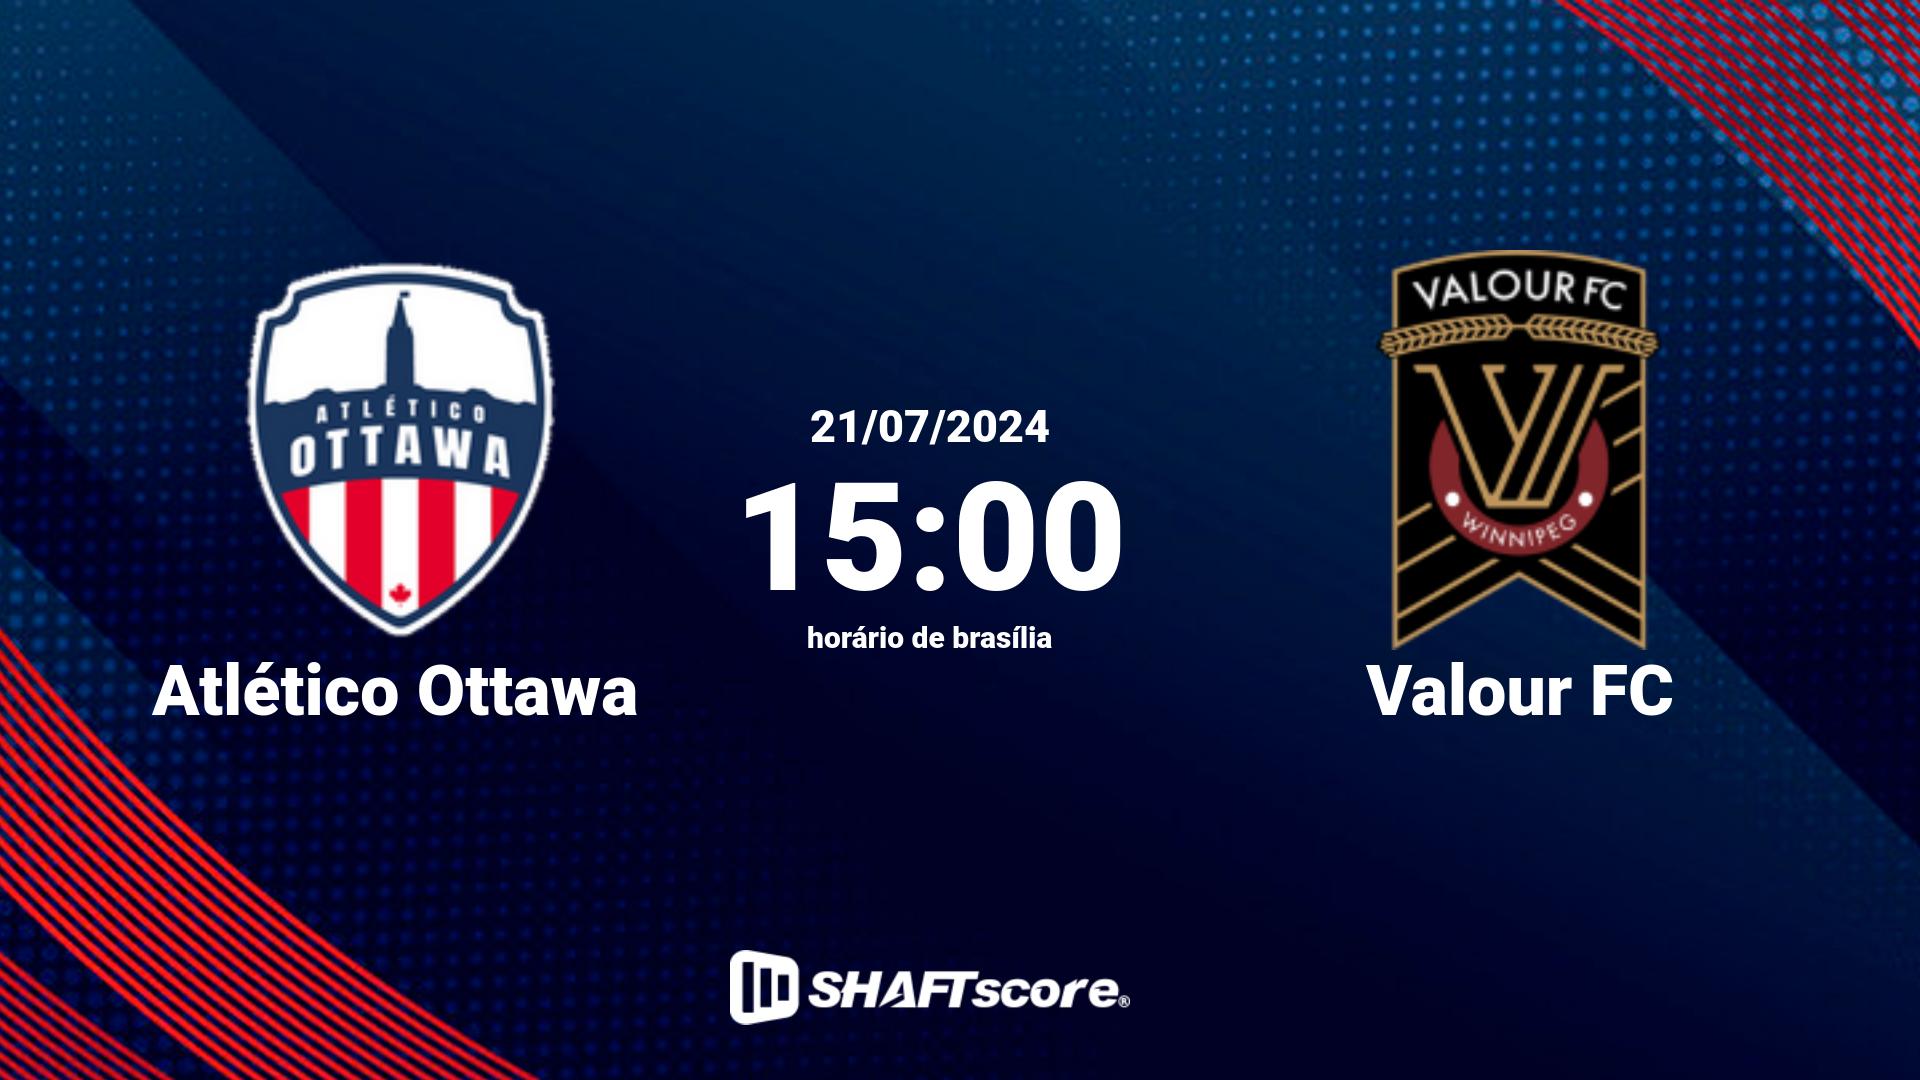 Estatísticas do jogo Atlético Ottawa vs Valour FC 21.07 15:00